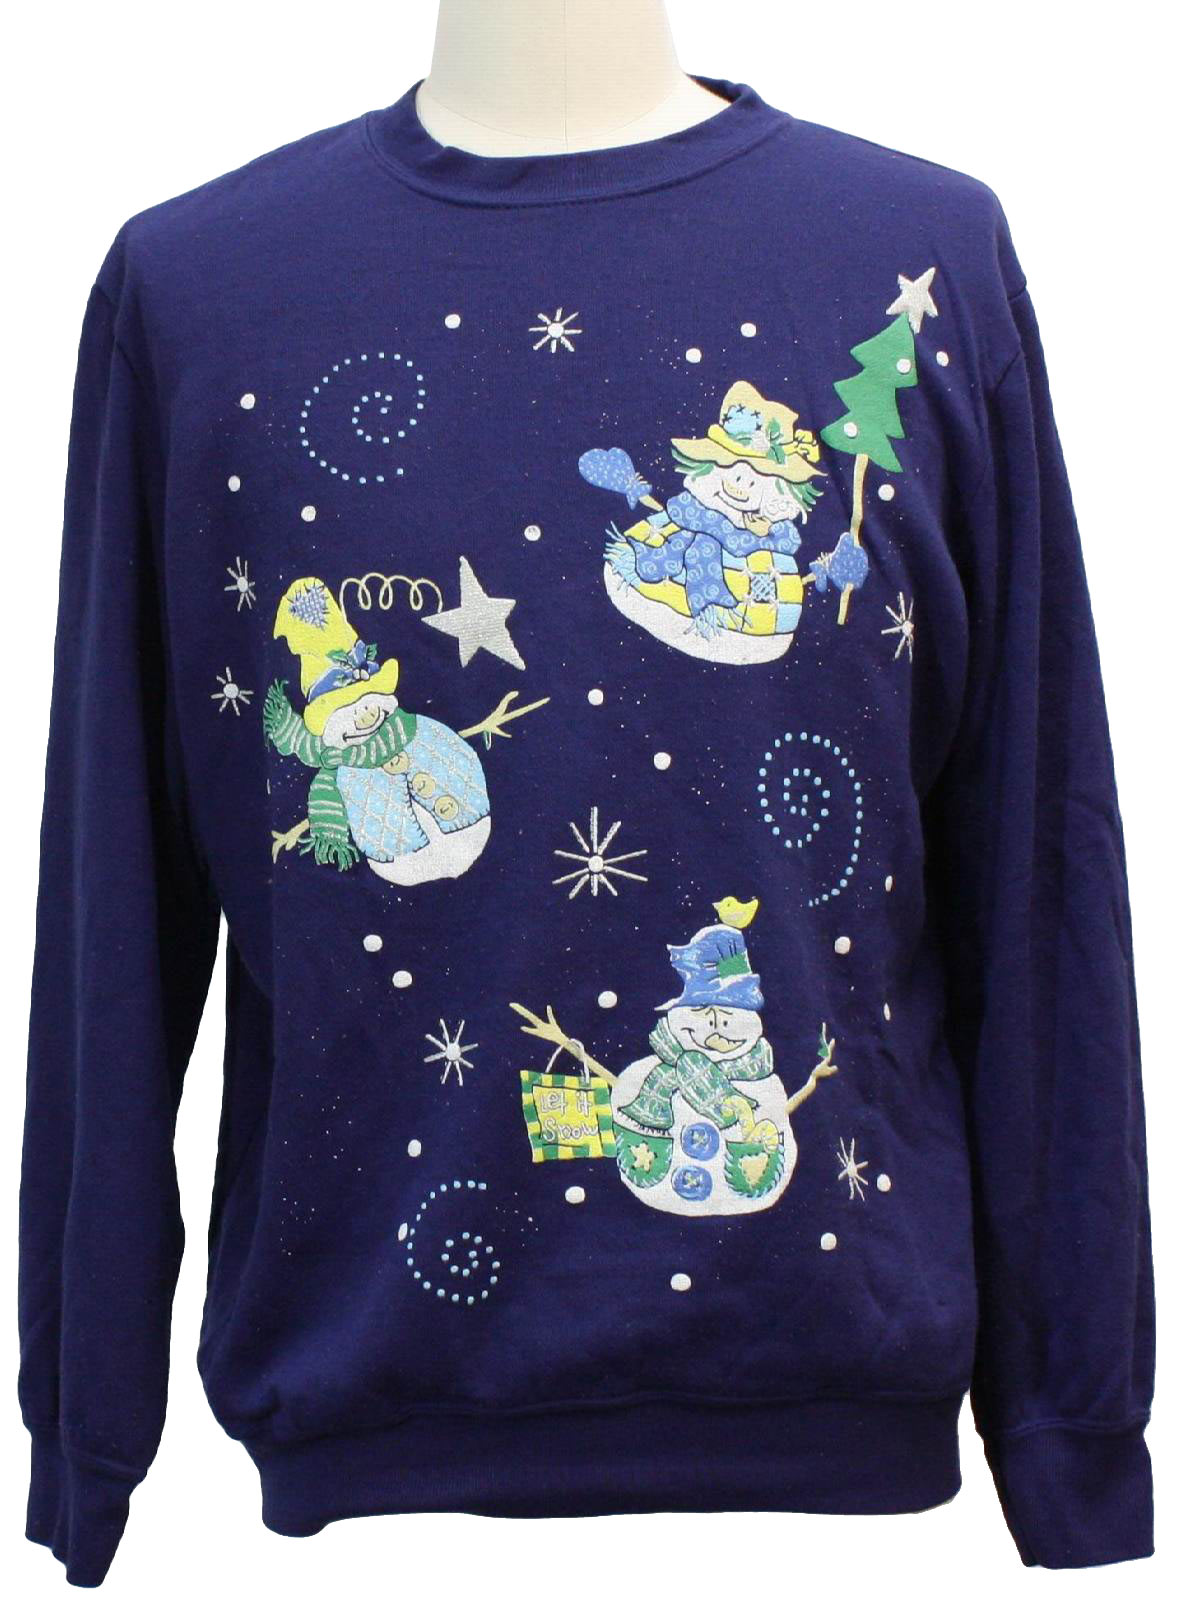 Ugly Christmas Sweatshirt: -Blair- Unisex purple background acrylic ...